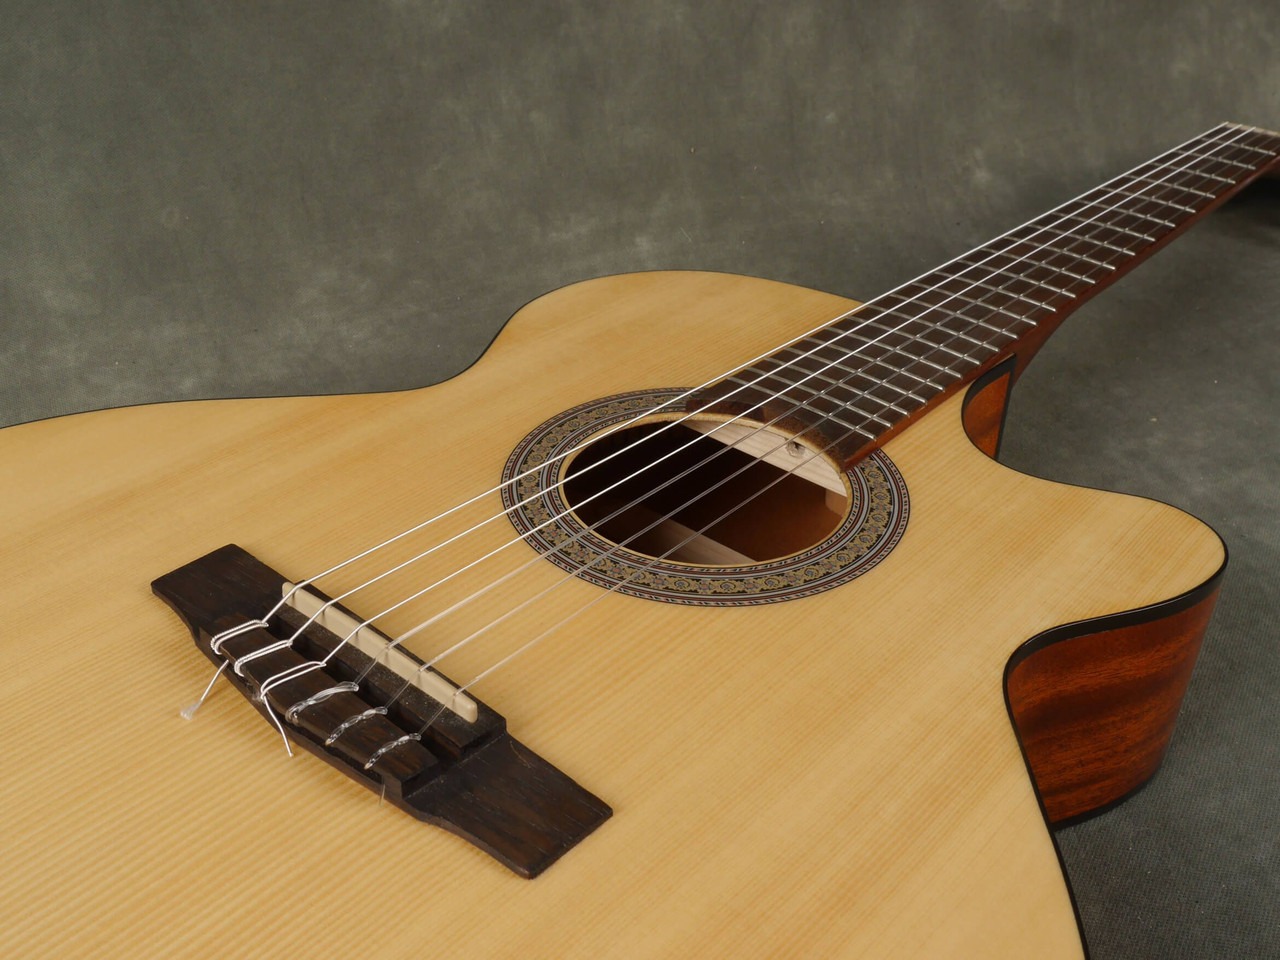 خرید گیتار کلاسیک کورت مدل سی ای سی 1 او پی